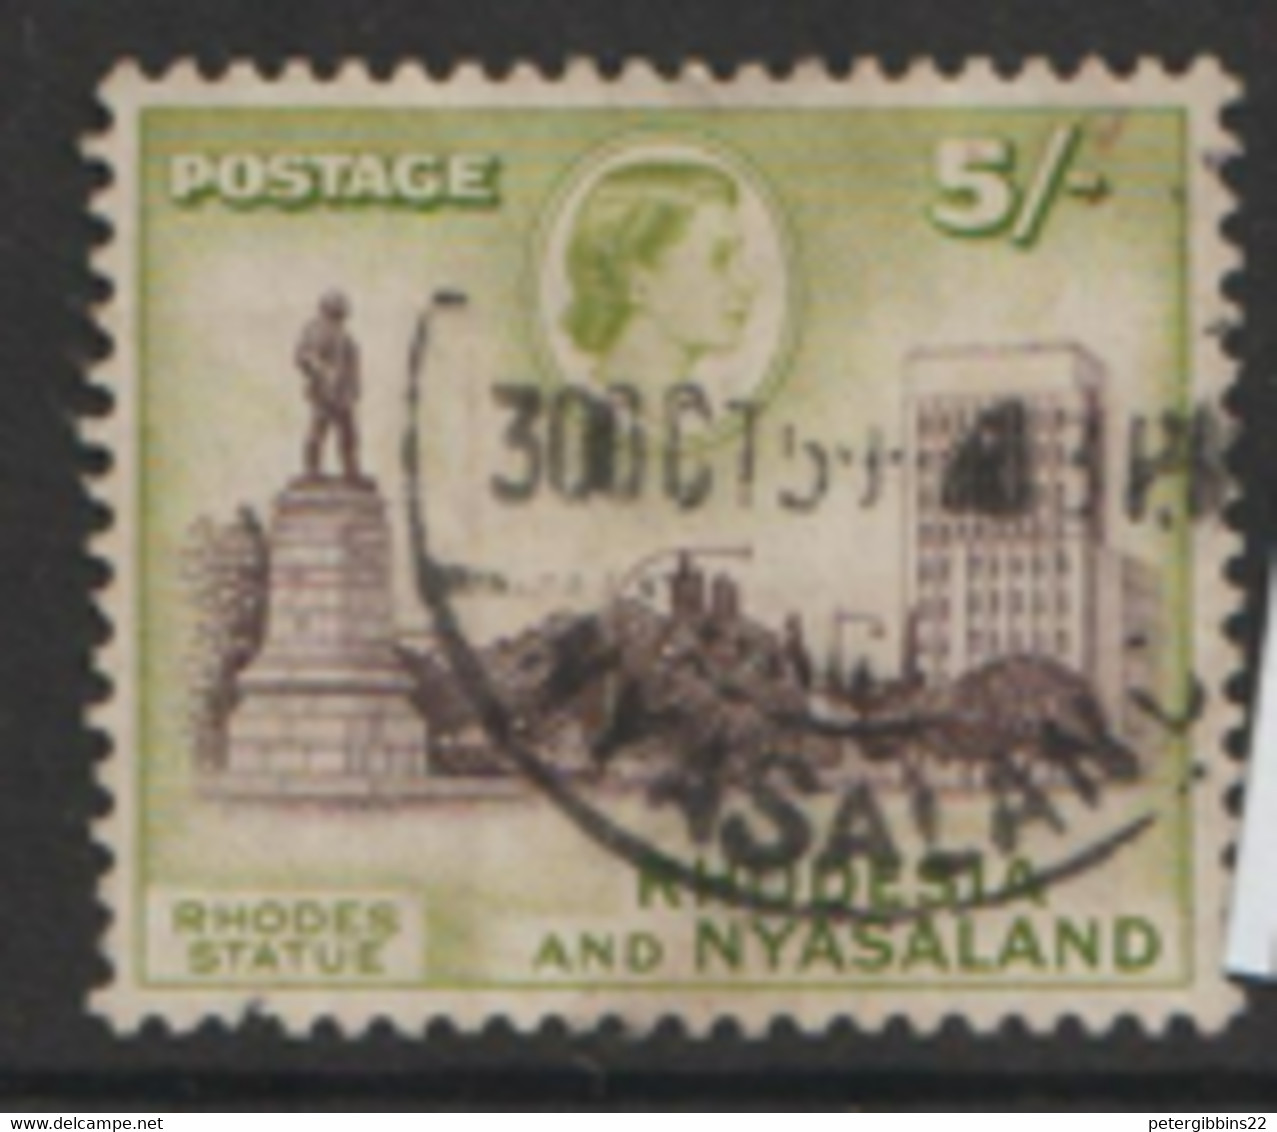 Rhdesia And Nyasaland  1959   SG  29  5/-d   Fine Used - Rhodesia & Nyasaland (1954-1963)